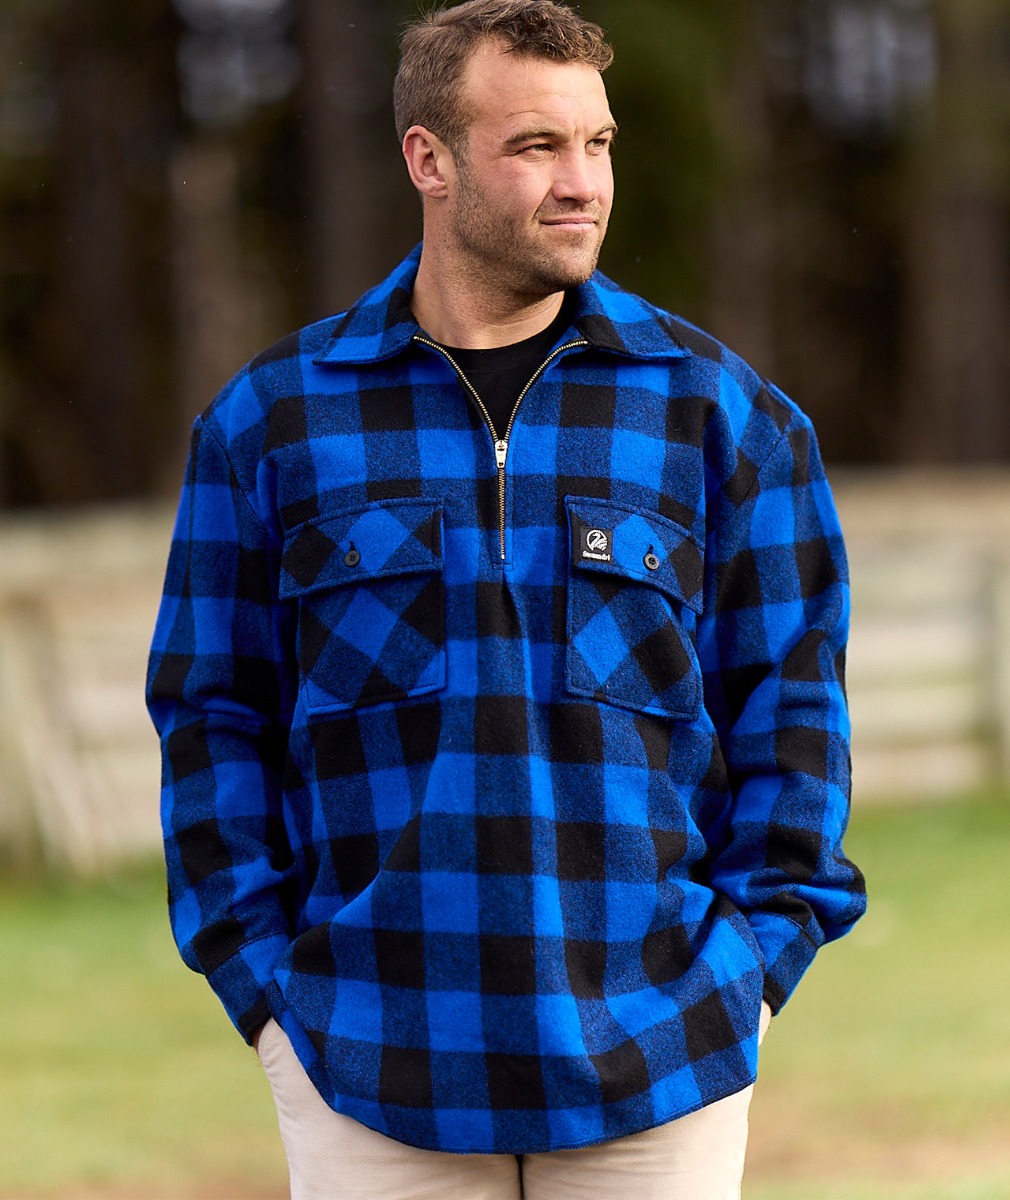 Men's Ranger Wool Zip Front Bushshirt